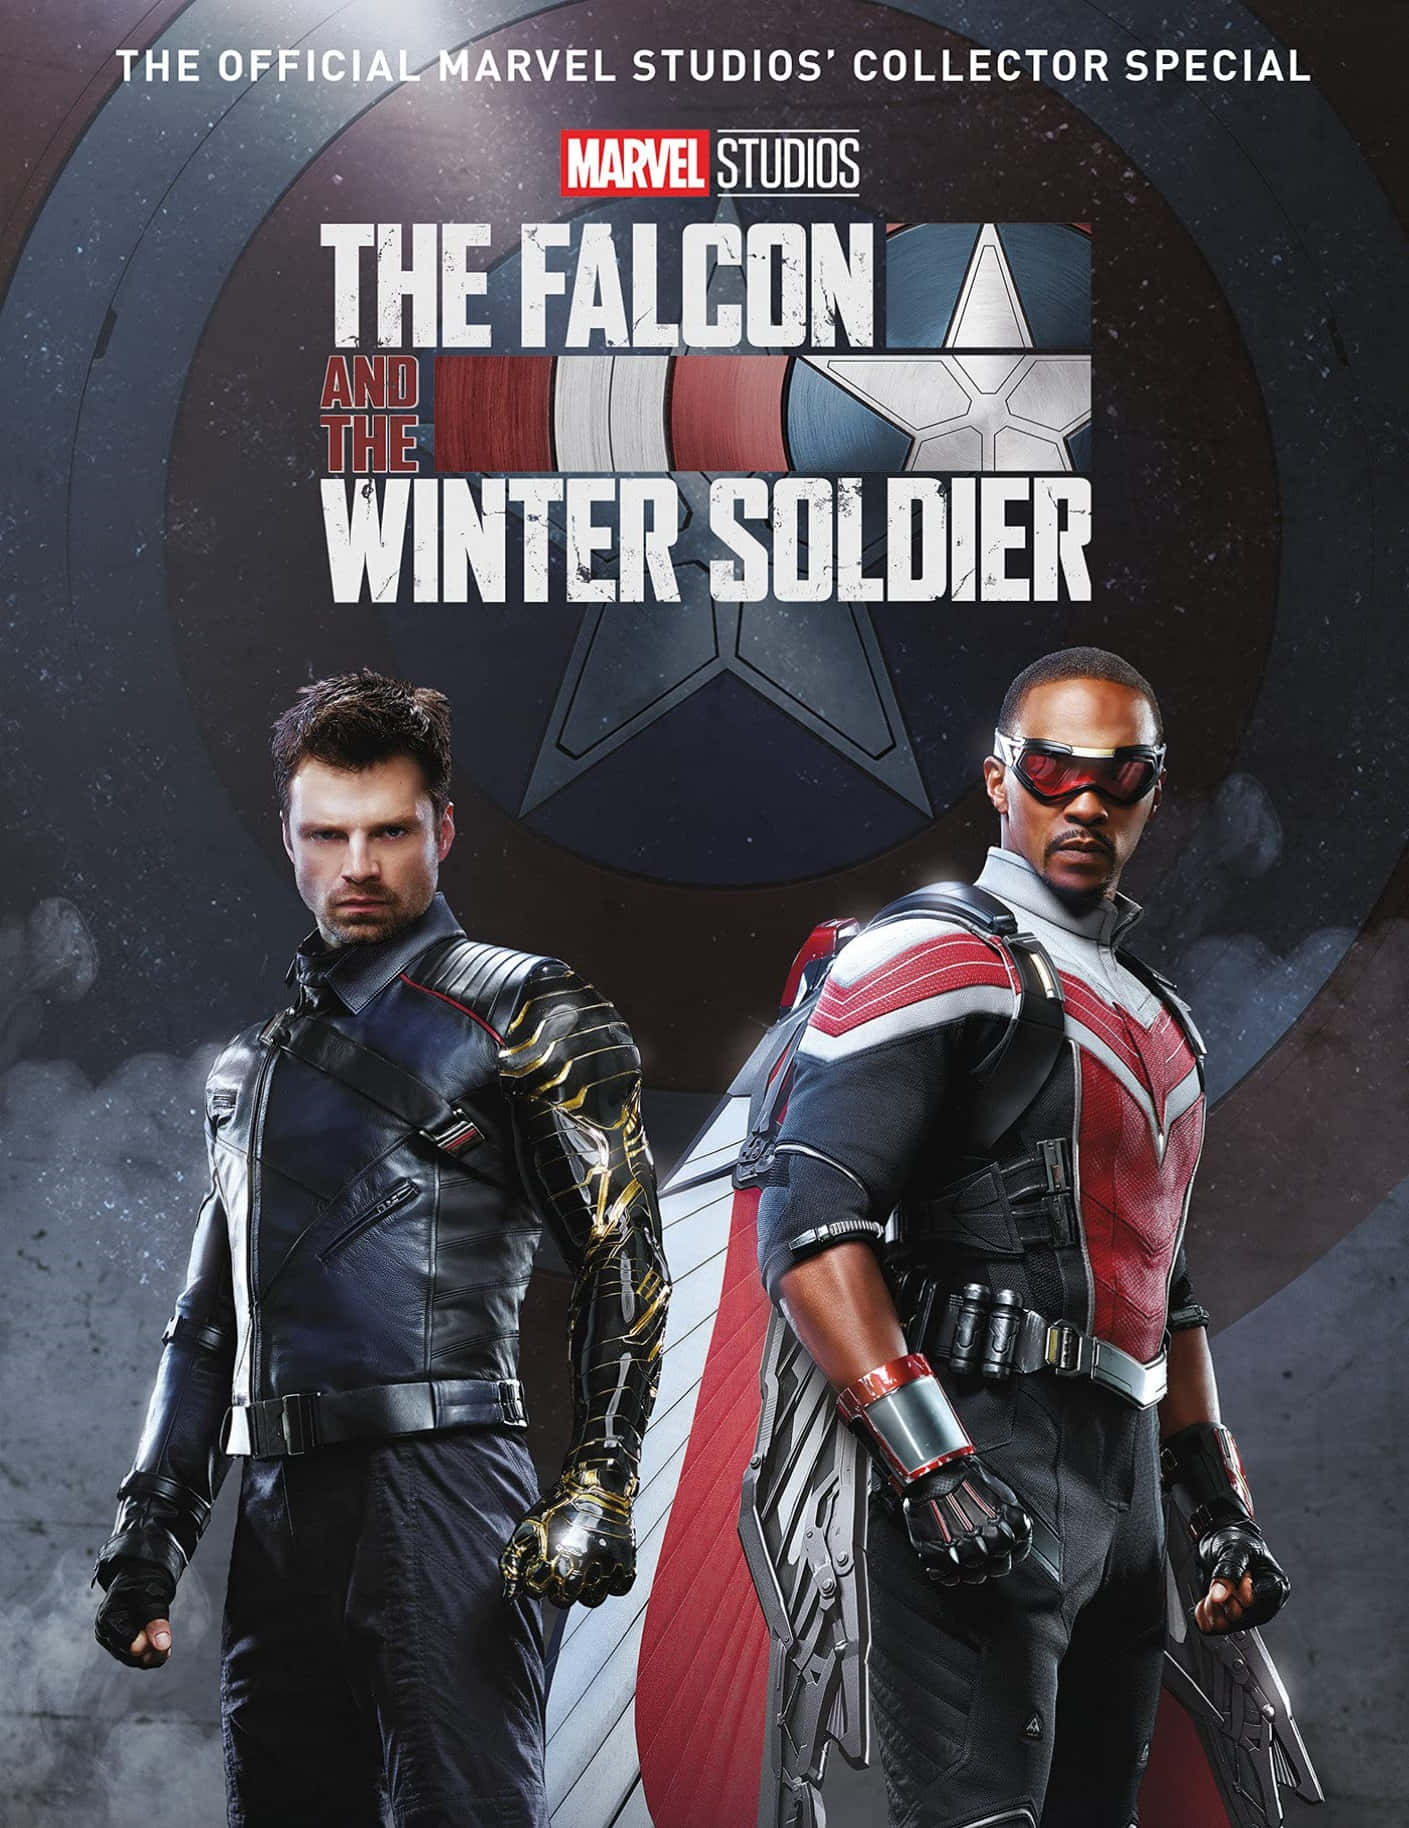 Falconoch Winter Soldier-filmens Hjältar. Wallpaper